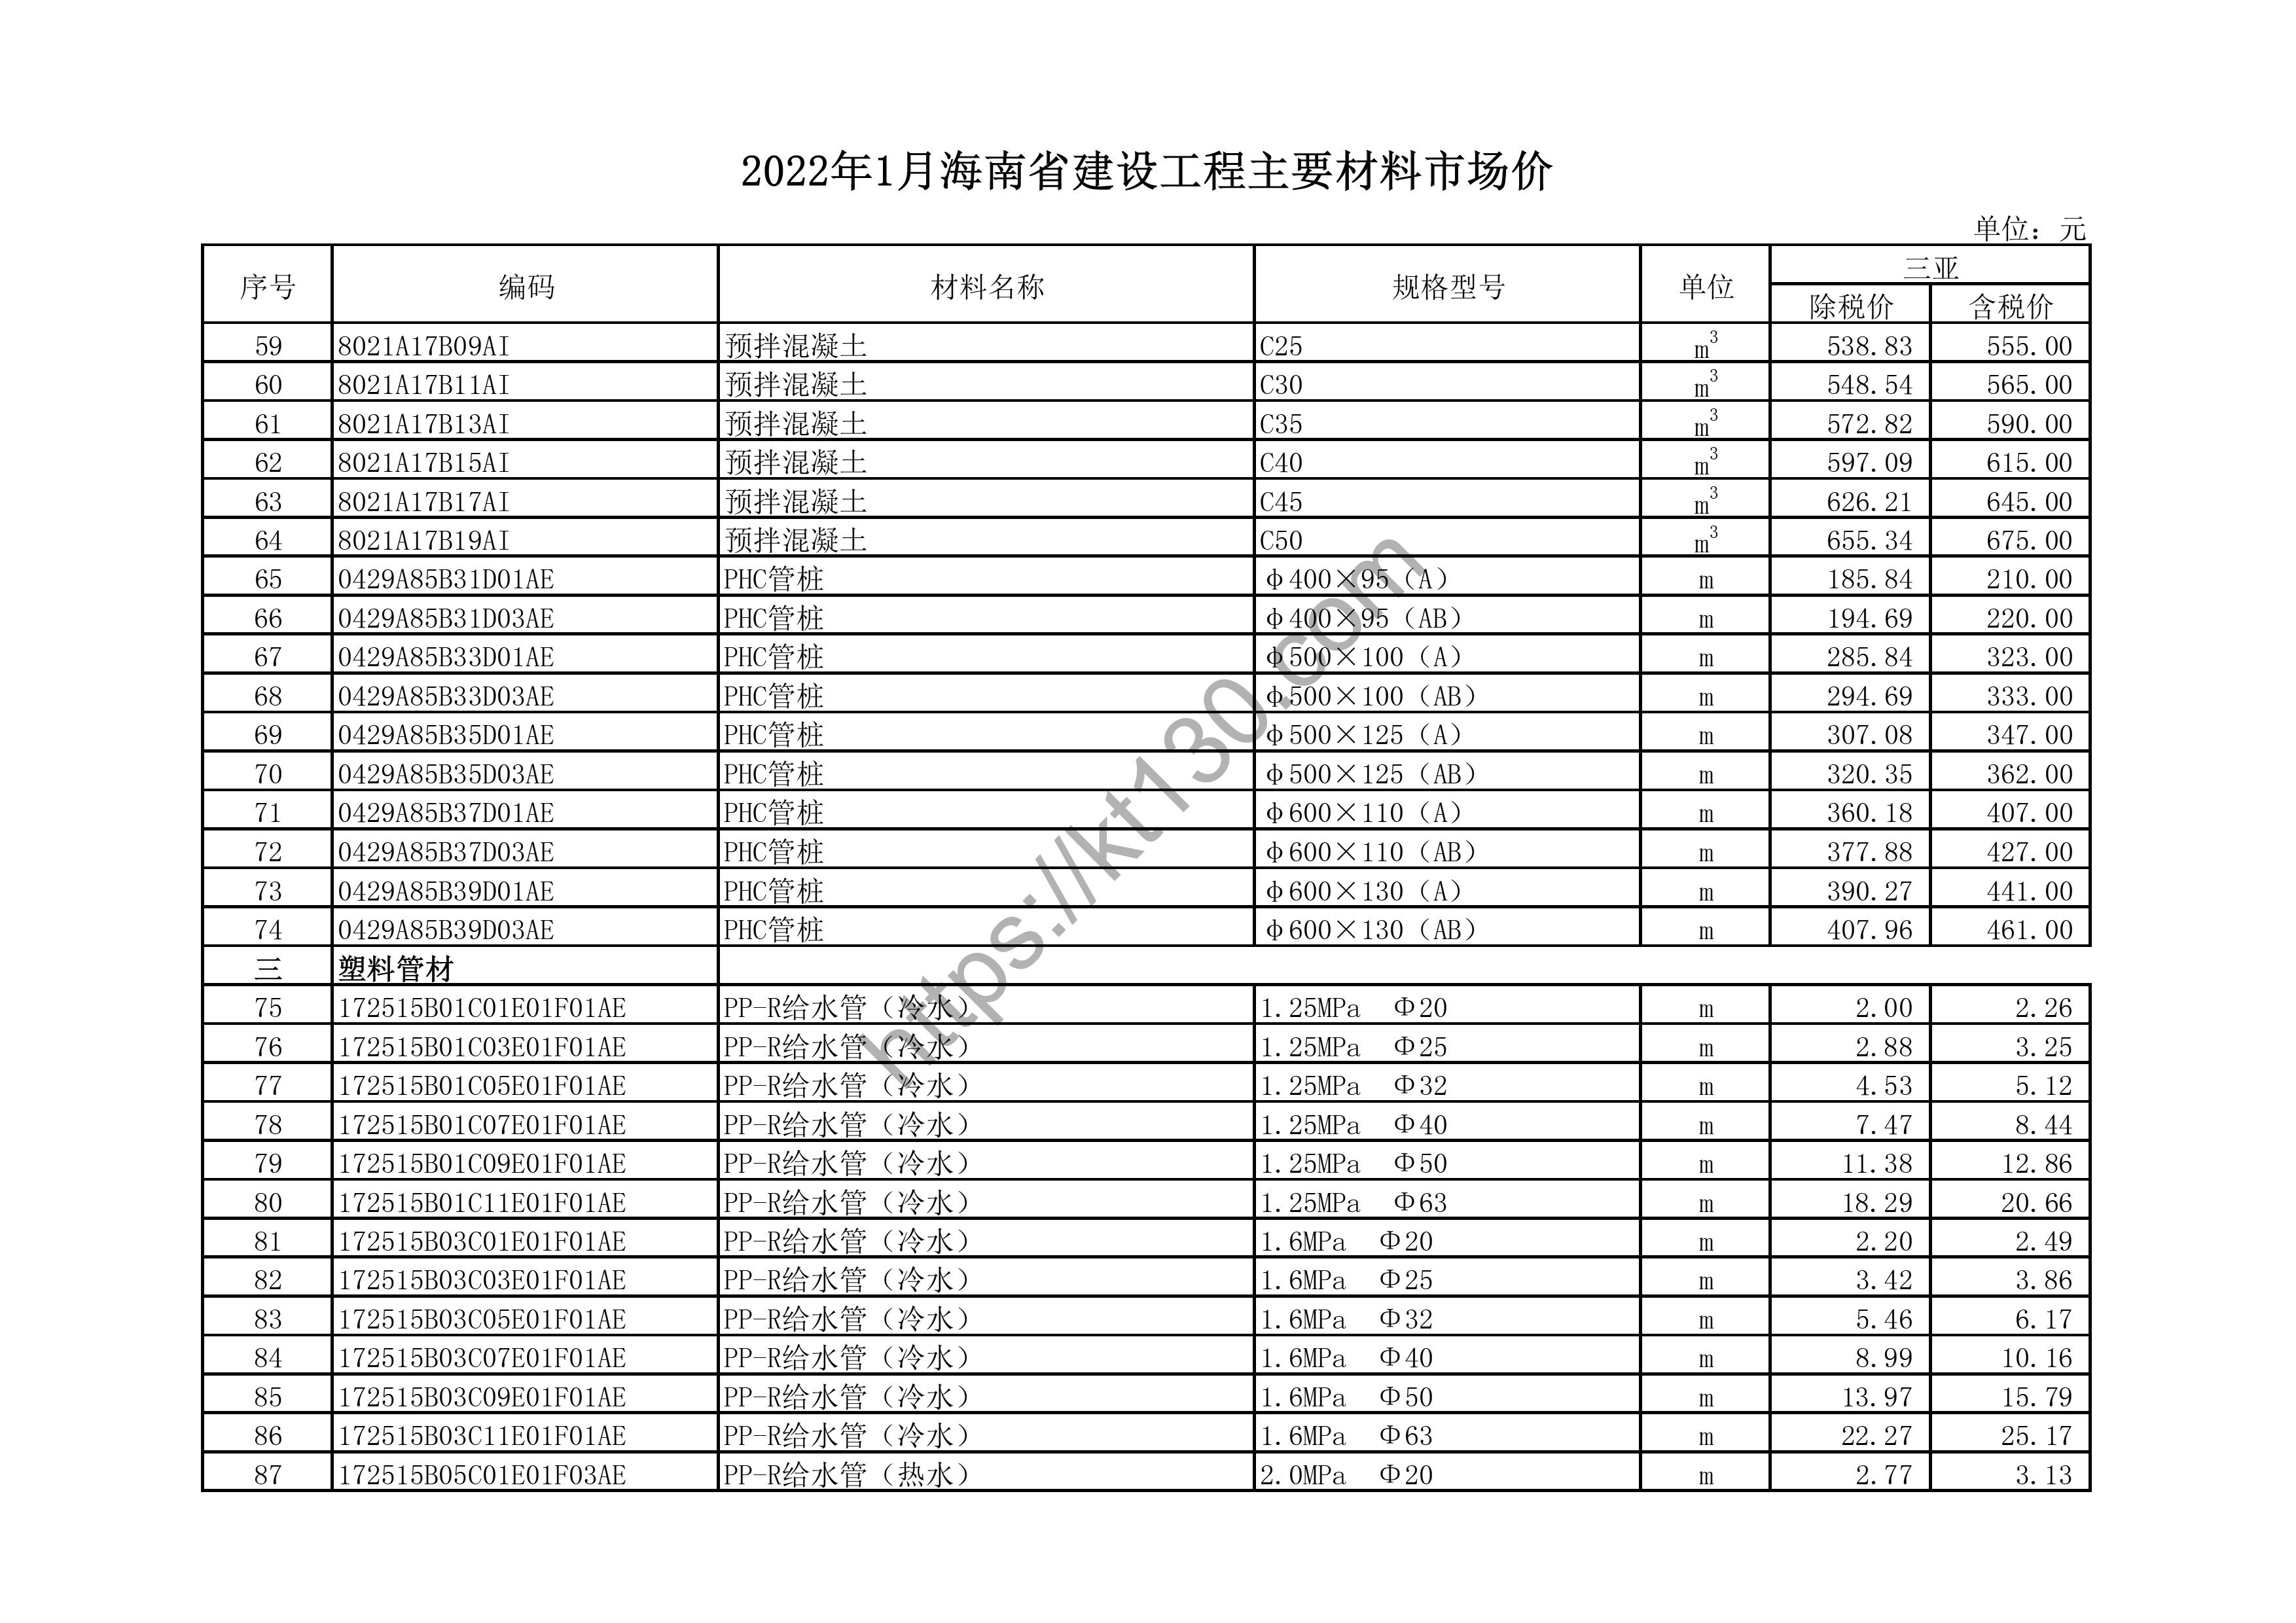 海南省2022年1月建筑材料价_ppr水管_43630